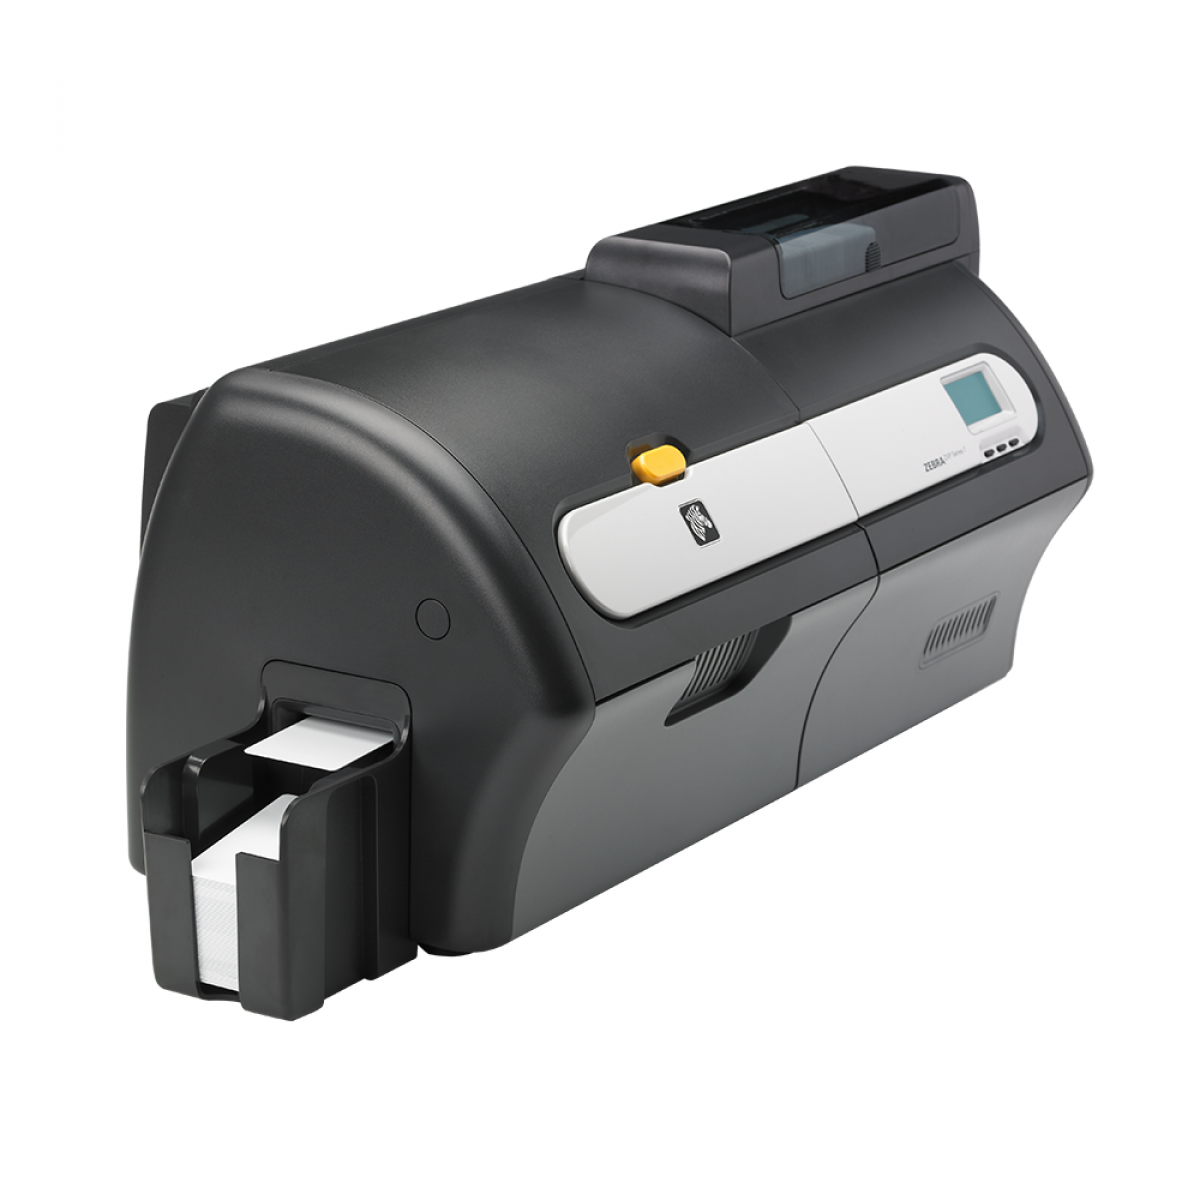 Zebra ZXP series 7- ID card printer